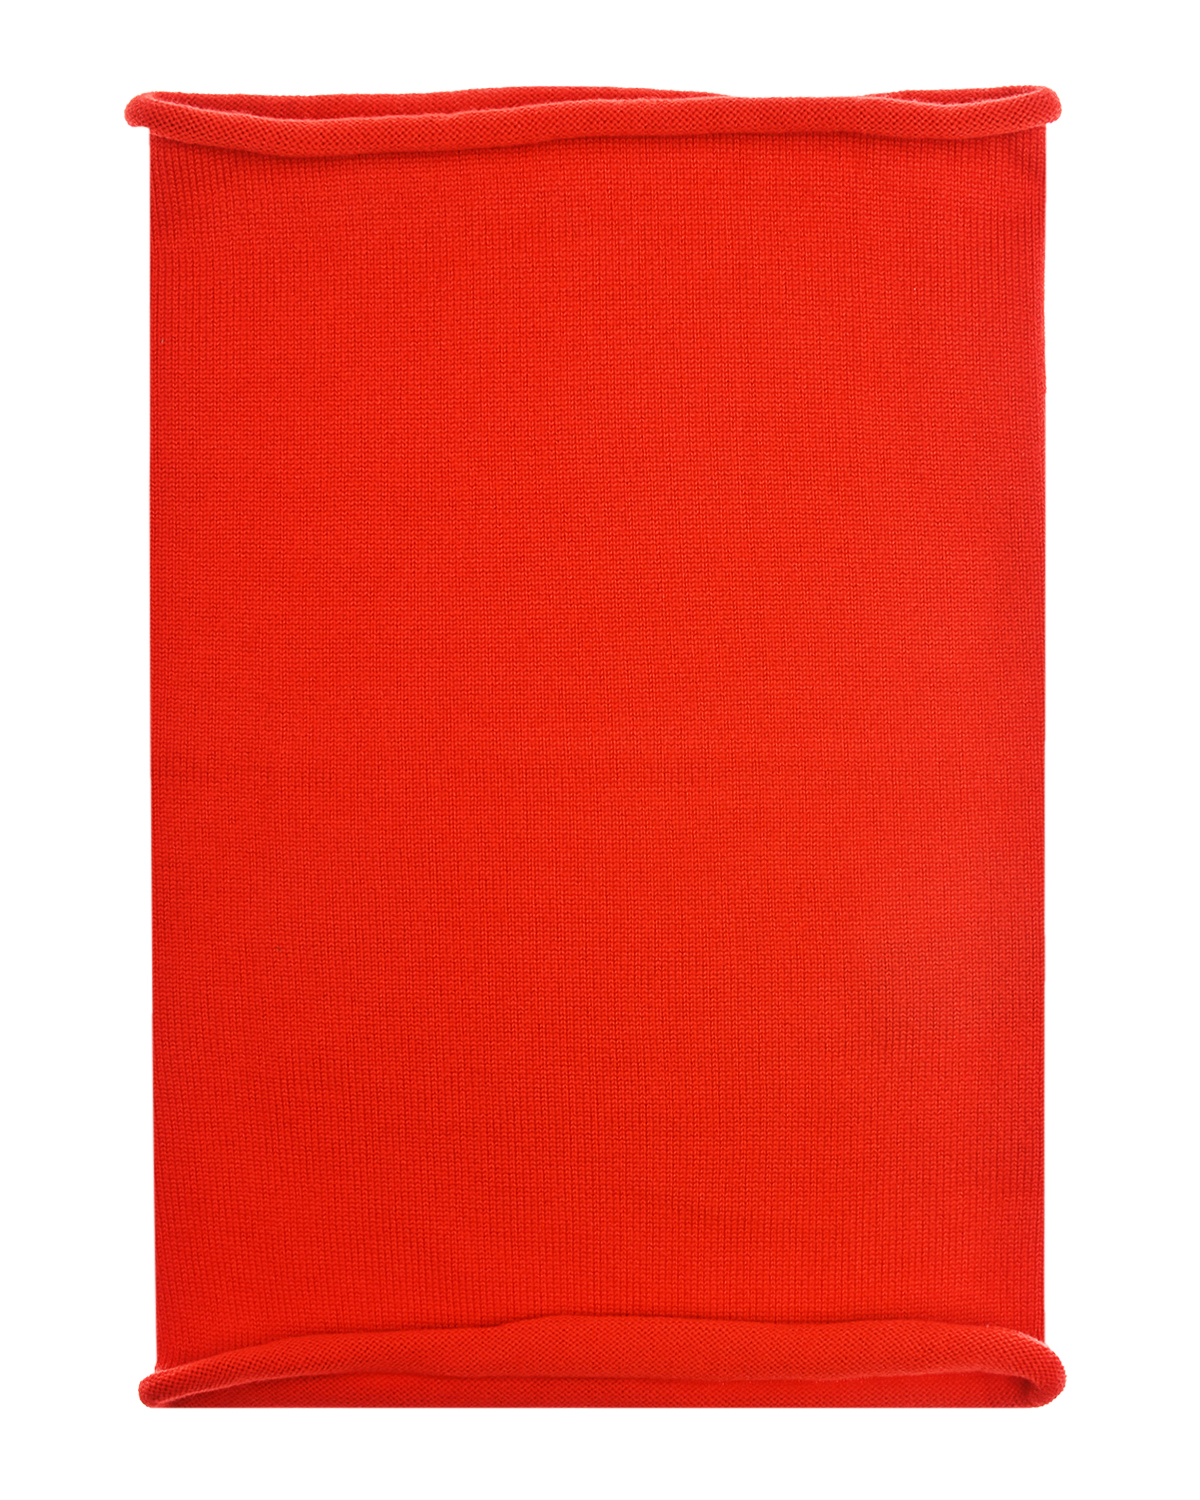 Красный шарф-ворот Norveg детский, размер unica - фото 2